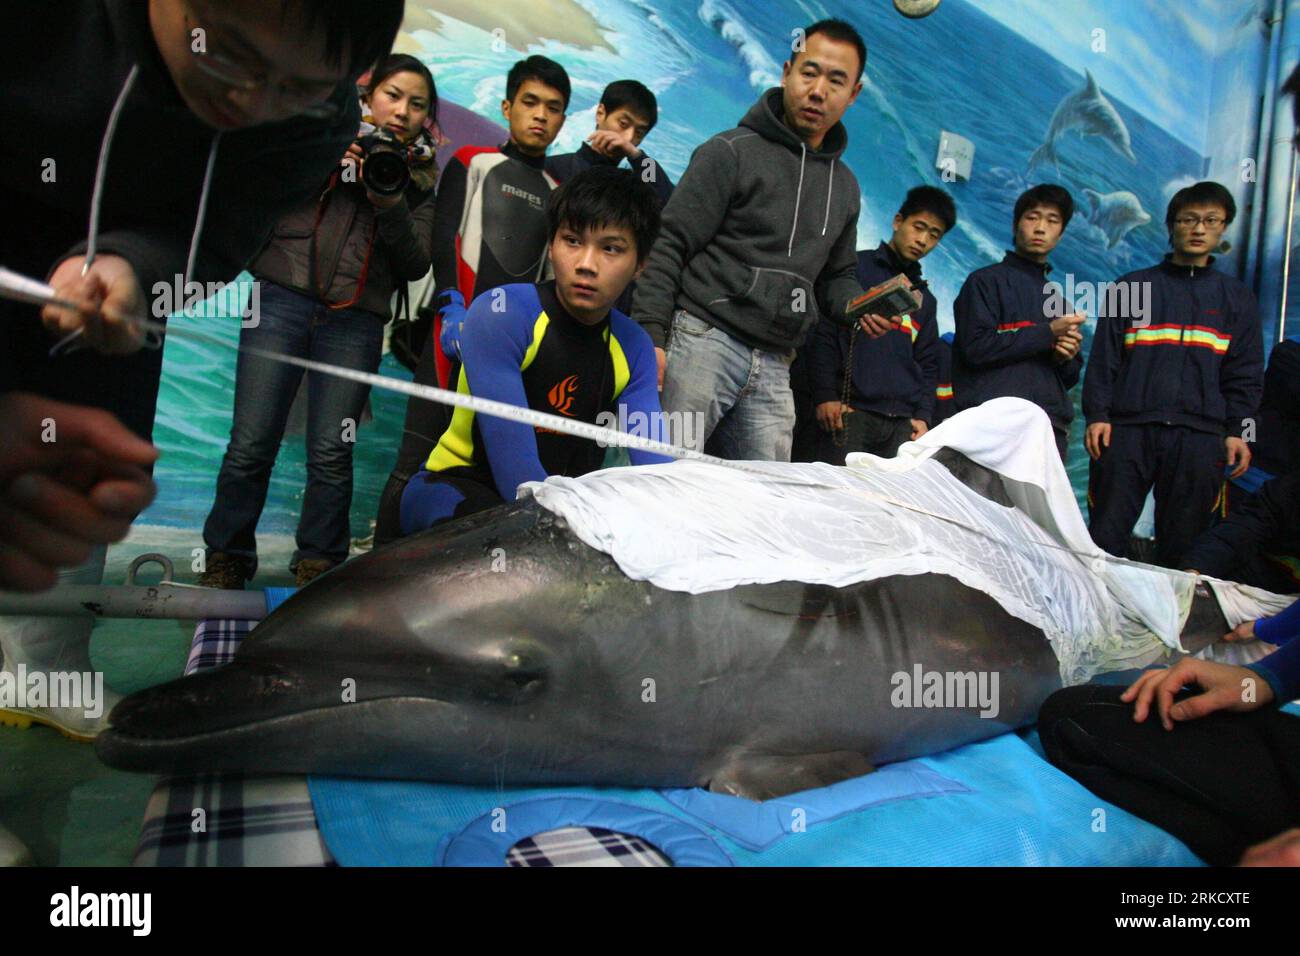 Bildnummer: 54825693 Datum: 17.01.2011 Copyright: Imago/Xinhua (110117) -- NINGBO, 17 de enero de 2011 (Xinhua) -- Los miembros del personal del acuario Ningbo Ocean World miden la longitud de un delfín recién llegado en Ningbo, provincia de Zhejiang del este de China, 17 de enero de 2011. Tres delfines fueron transportados aquí desde Japón el lunes, y se instalarían en Ningbo Ocean World. Cada uno de los delfines, de 2,2 a 2,5 metros de longitud, pesa más de 200 kilogramos. (Xinhua/Zhang Peijian) (hdt) CHINA-JAPÓN-DOLPHIN-TRANSPORT-ARRIVAL (CN) PUBLICATIONxNOTxINxCHN Gesellschaft Tiere Fotostory Transport Delfin Tiertransport Foto de stock